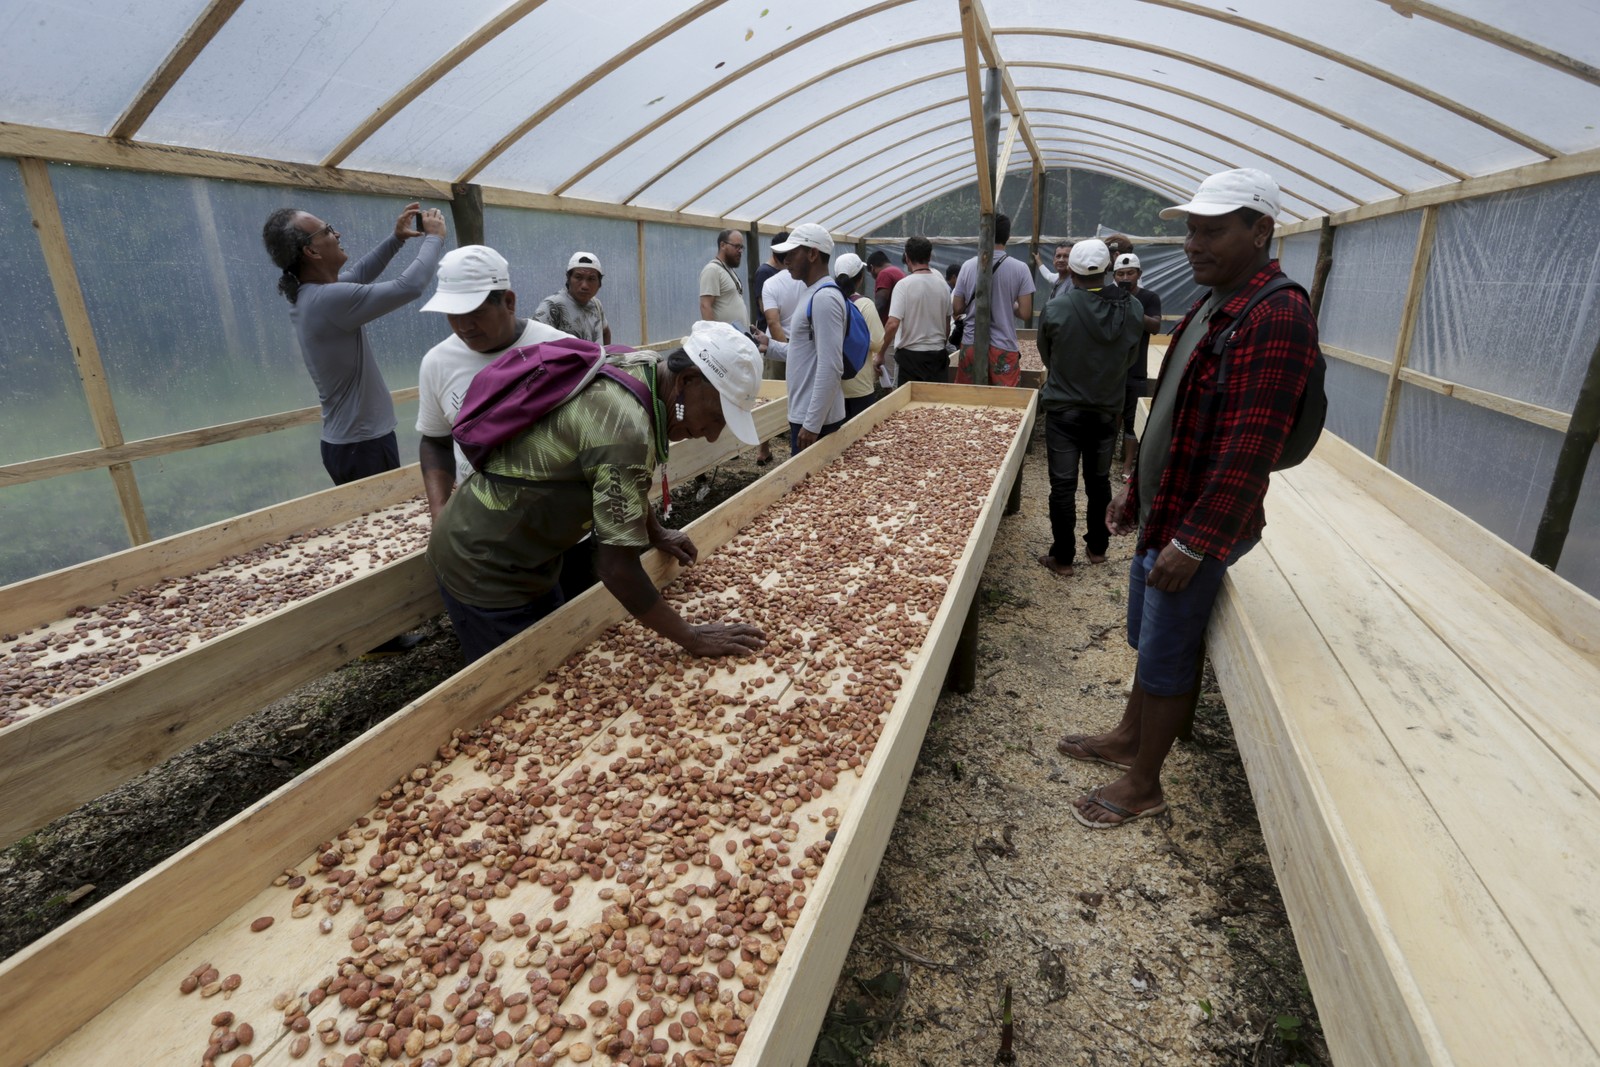 Beneficiamento de sementes de cupuaçu na preparação de chocolate , no Centro Yorenka Tasorentsi , em Marechal Thaumaturgo -  Foto: Domingos Peixoto / Agência O Globo